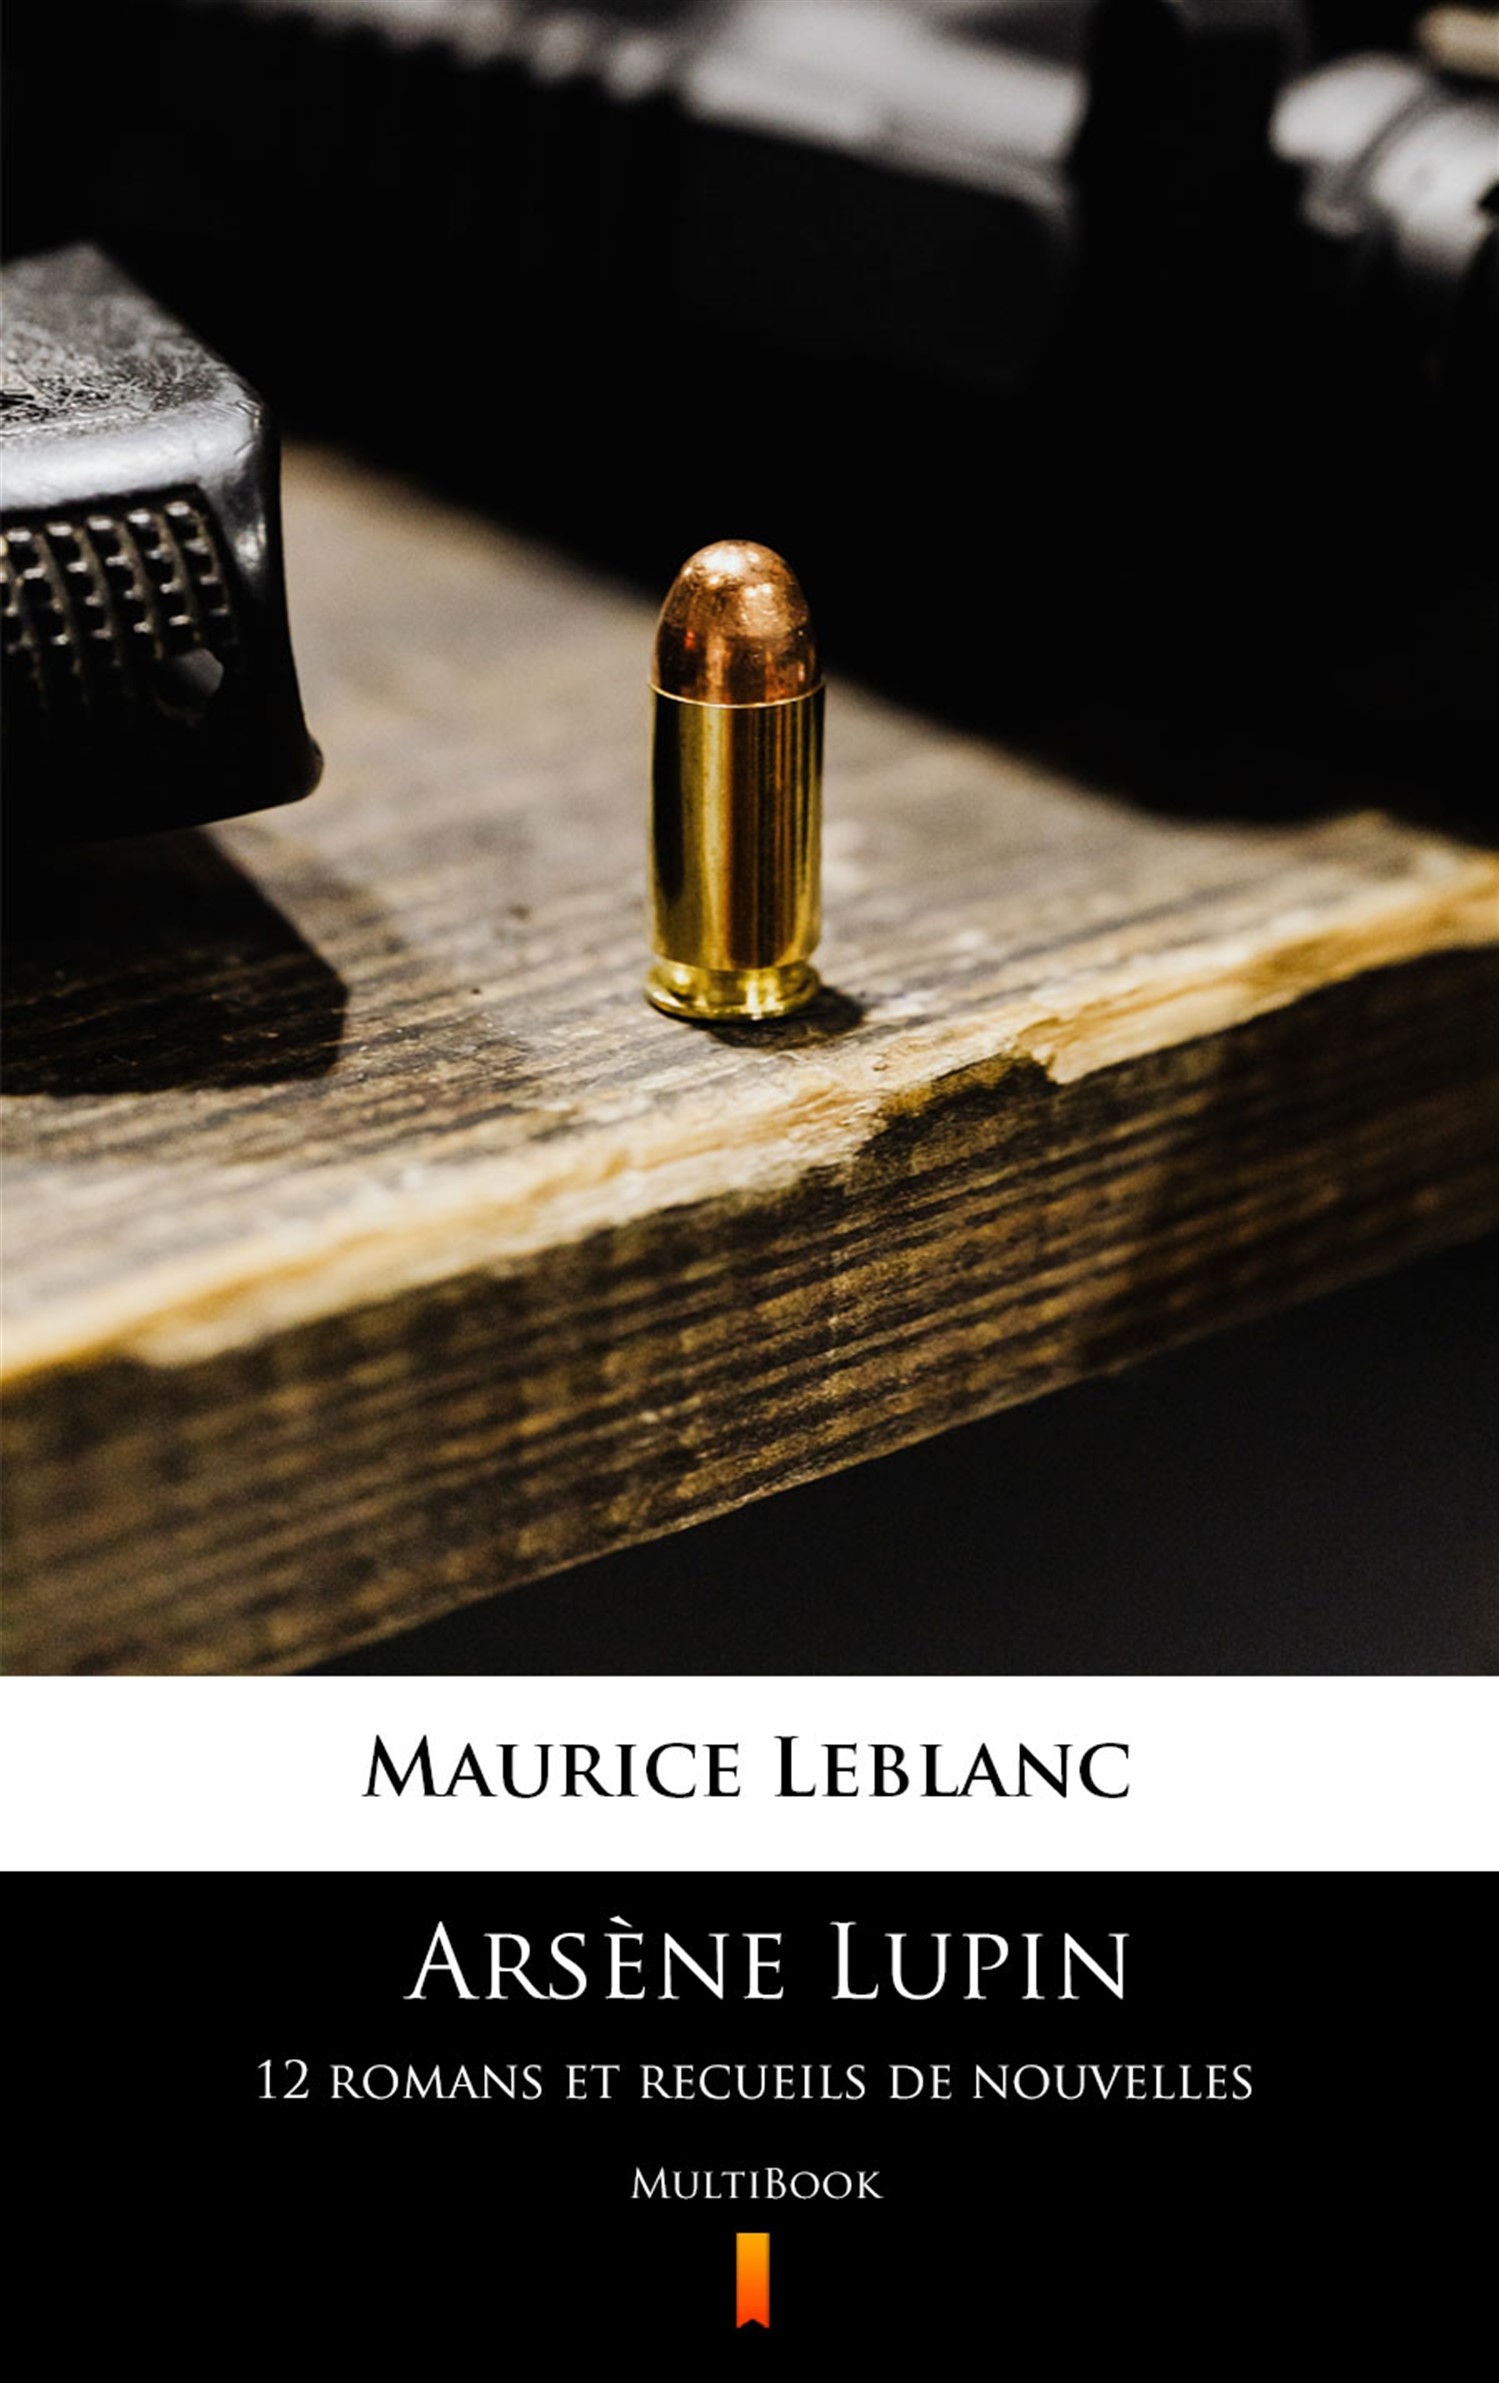 Okładka:Arsène Lupin. 12 romans et recueils de nouvelles. MultiBook 